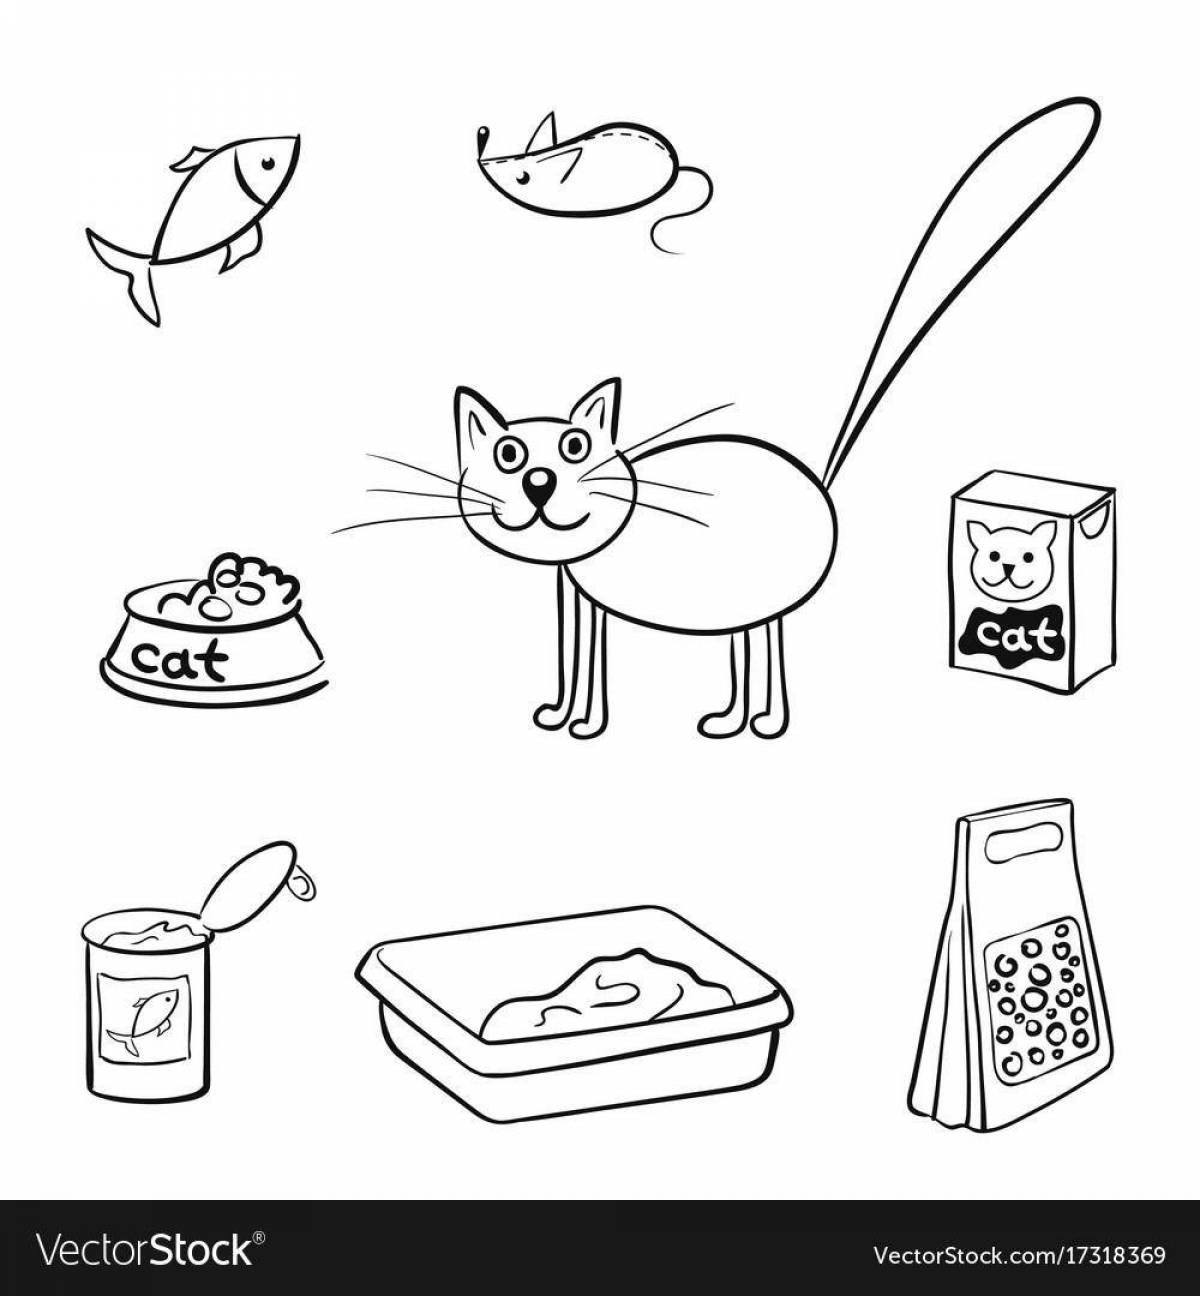 Fabulous cat food coloring book